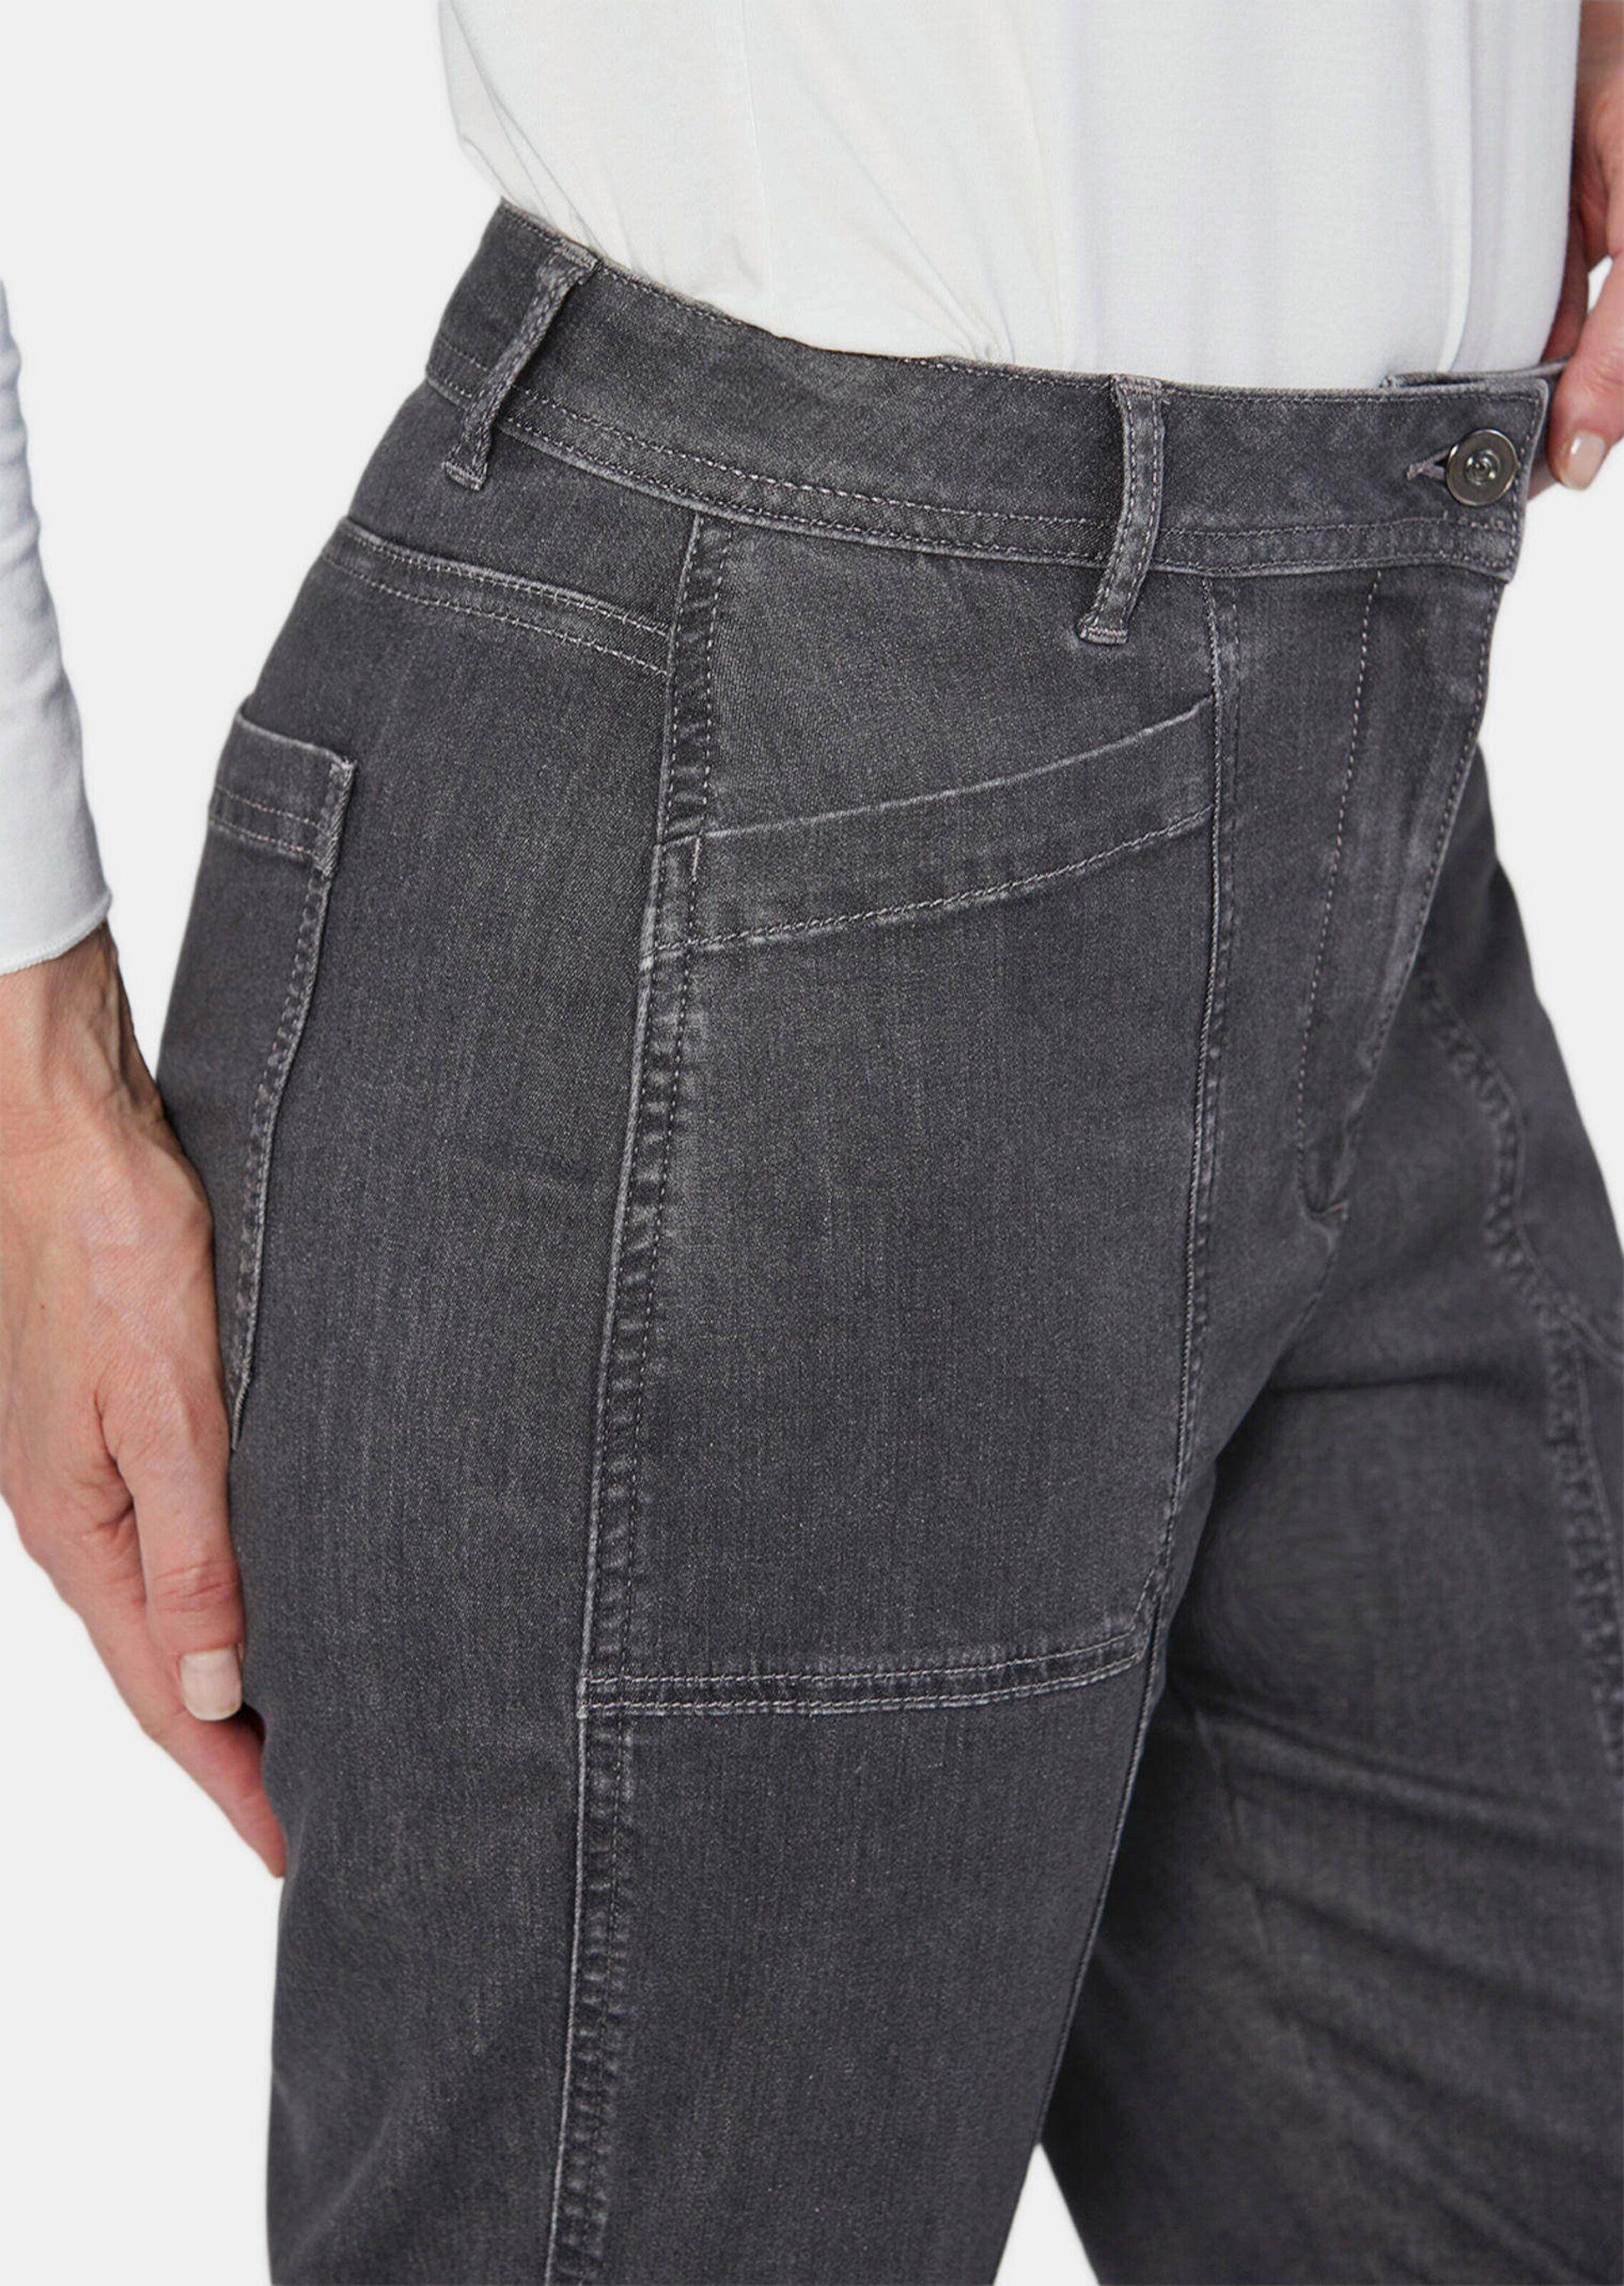 GOLDNER Stoffhose mit Kurzgröße: Jeans Wascheffekt